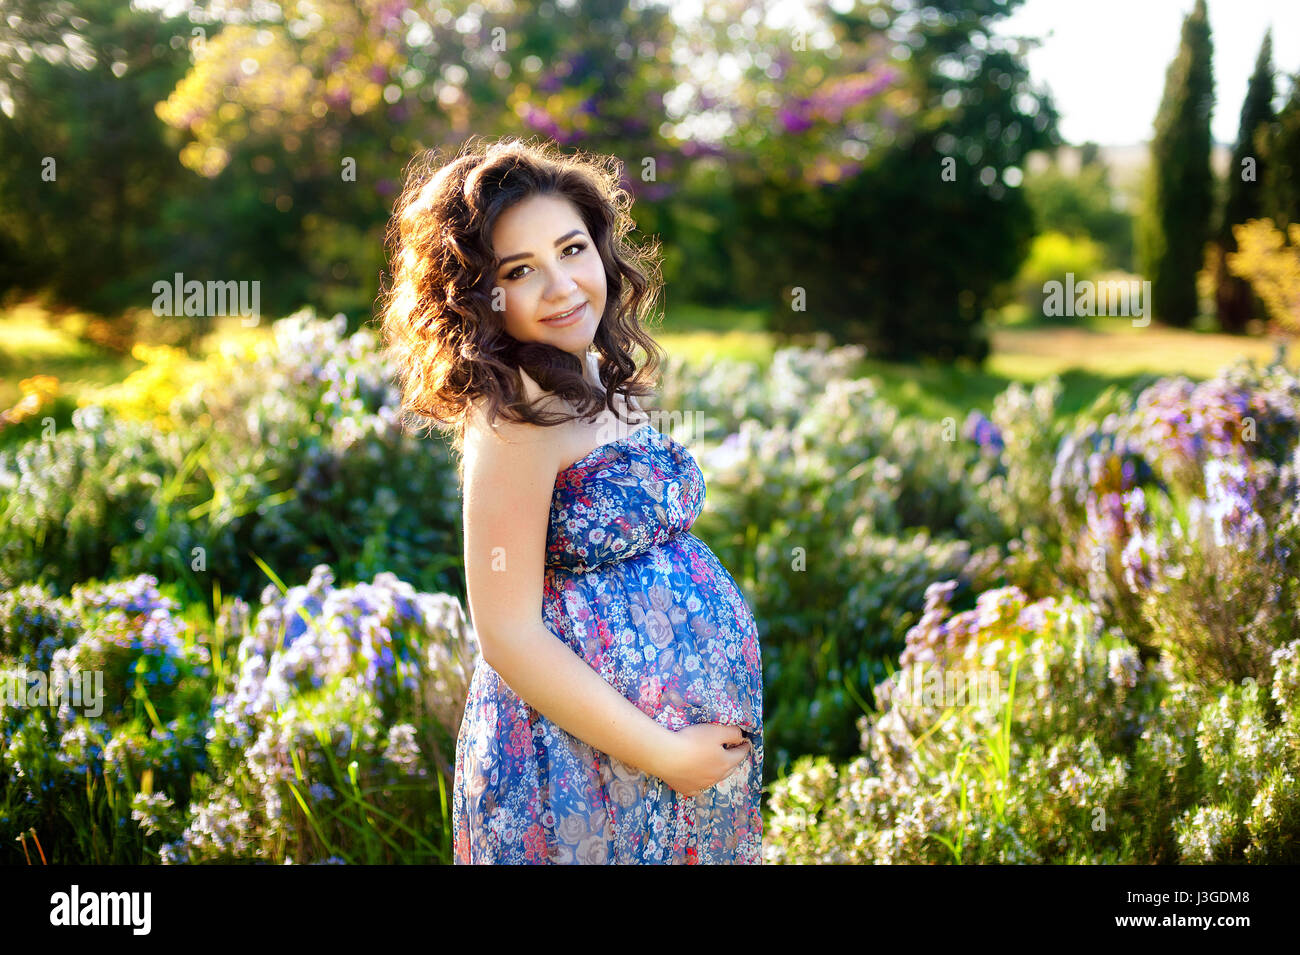 La mujer embarazada en el florido jardín de primavera. Disparar el embarazo y la maternidad de la mujer. Foto de stock